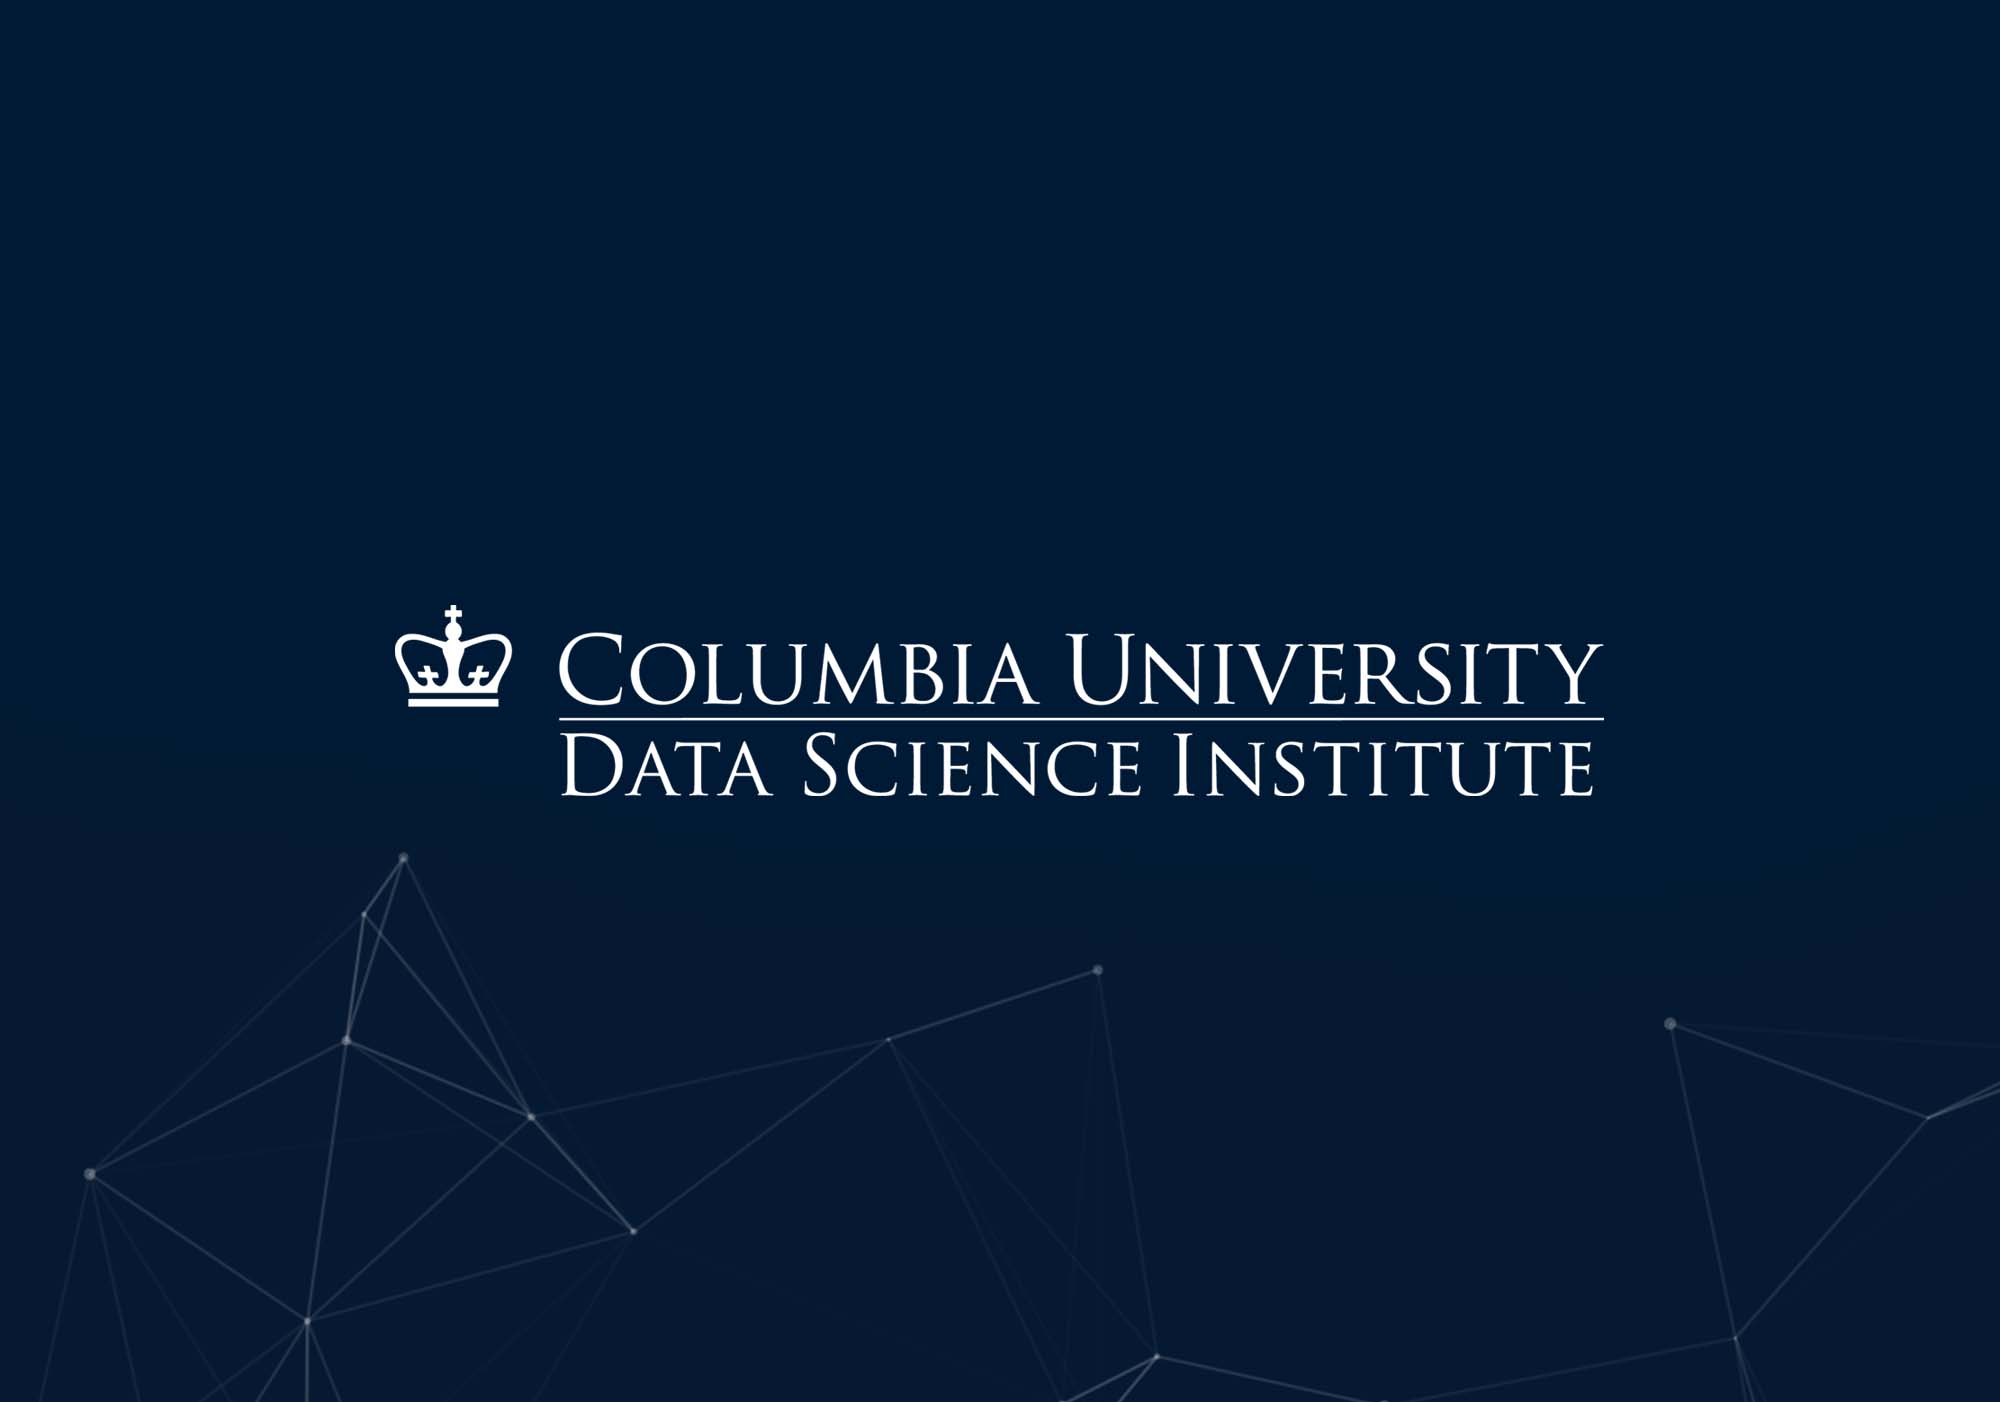 Data Science Institute at Columbia University